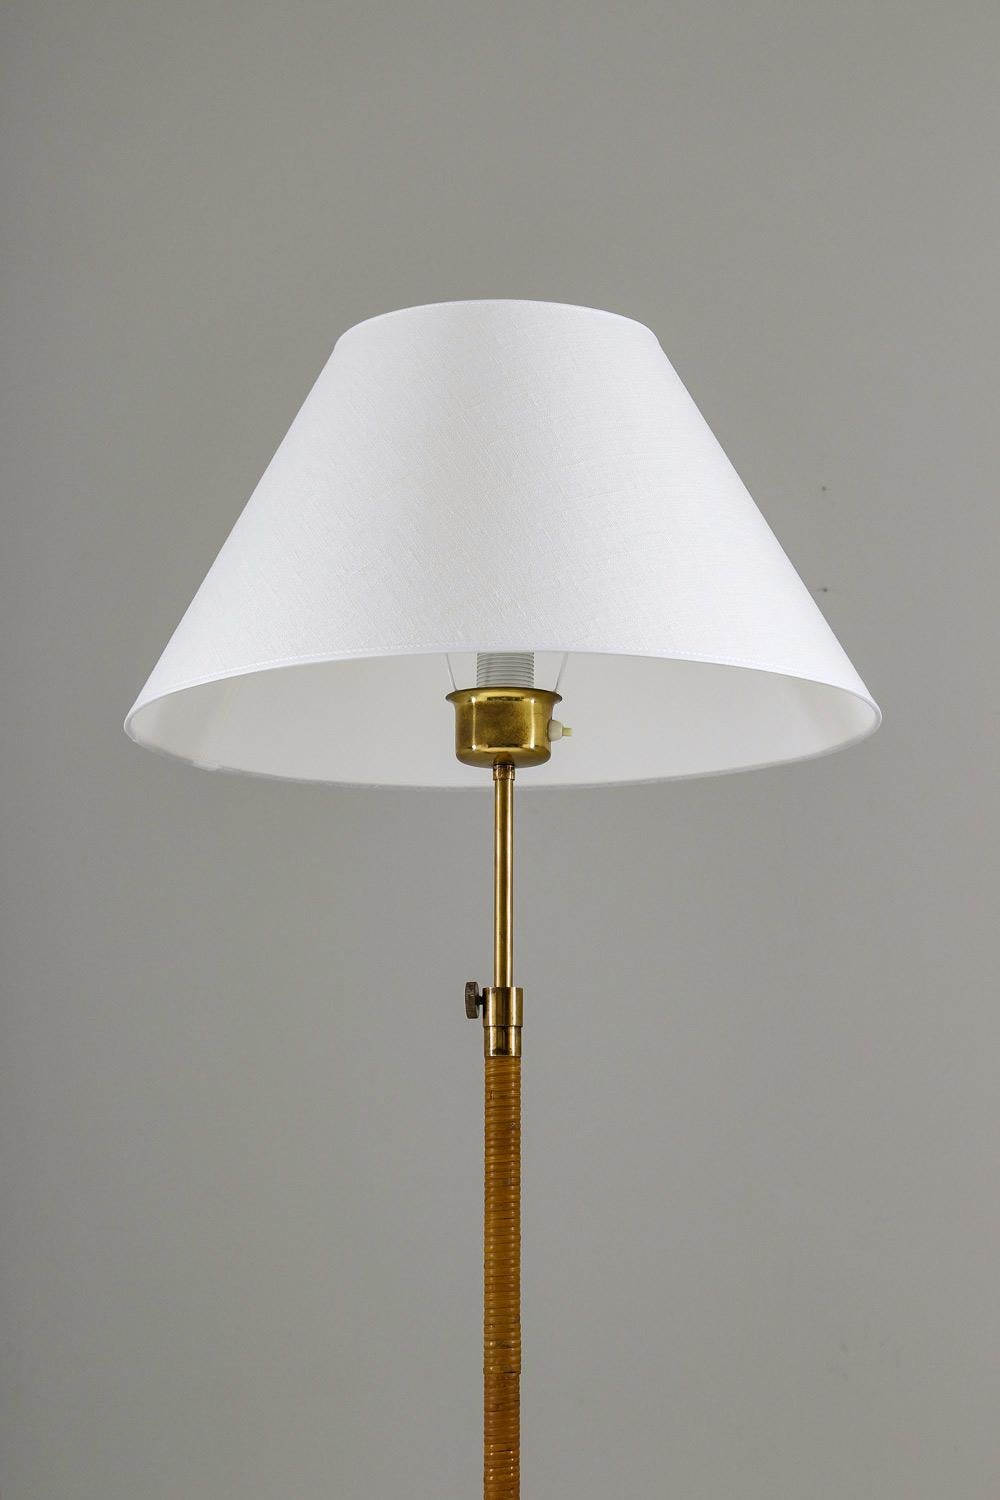 Seltene Stehlampe, wahrscheinlich hergestellt von ASEA, Schweden, 1940er Jahre.
Sehr elegante Lampe mit schönem Design. Der Fuß, der die Lampe hält, ist ein Kunstwerk für sich und hat eine perfekte Patina. Die Stange ist mit Rattan umwickelt, mit